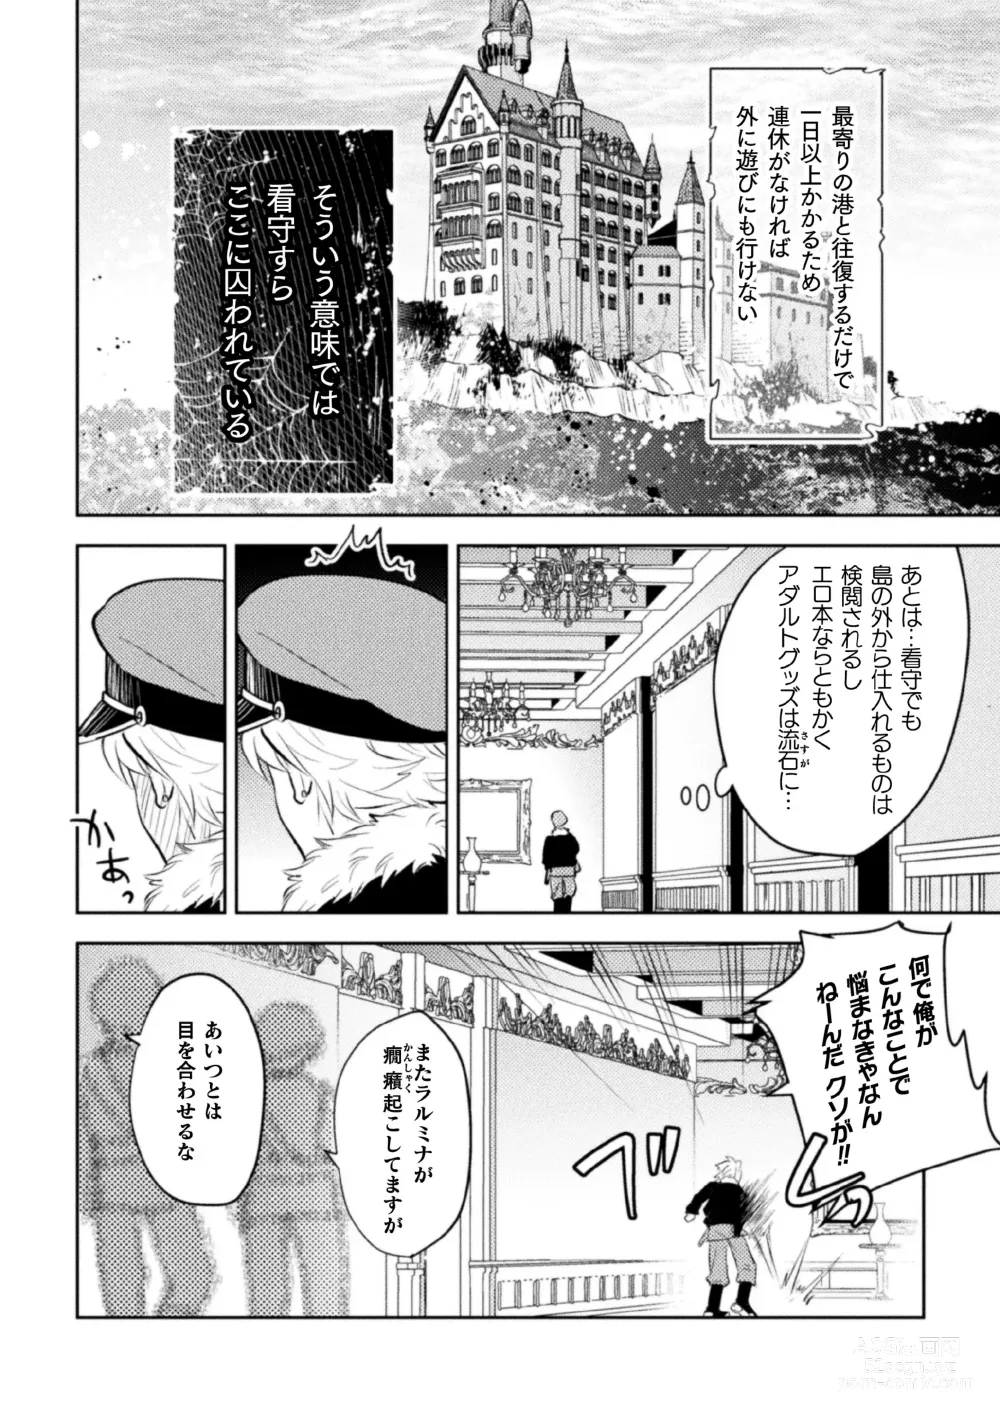 Page 6 of manga Zekkai Rougoku 3 Hatsujou Fukahi no Gekokujou